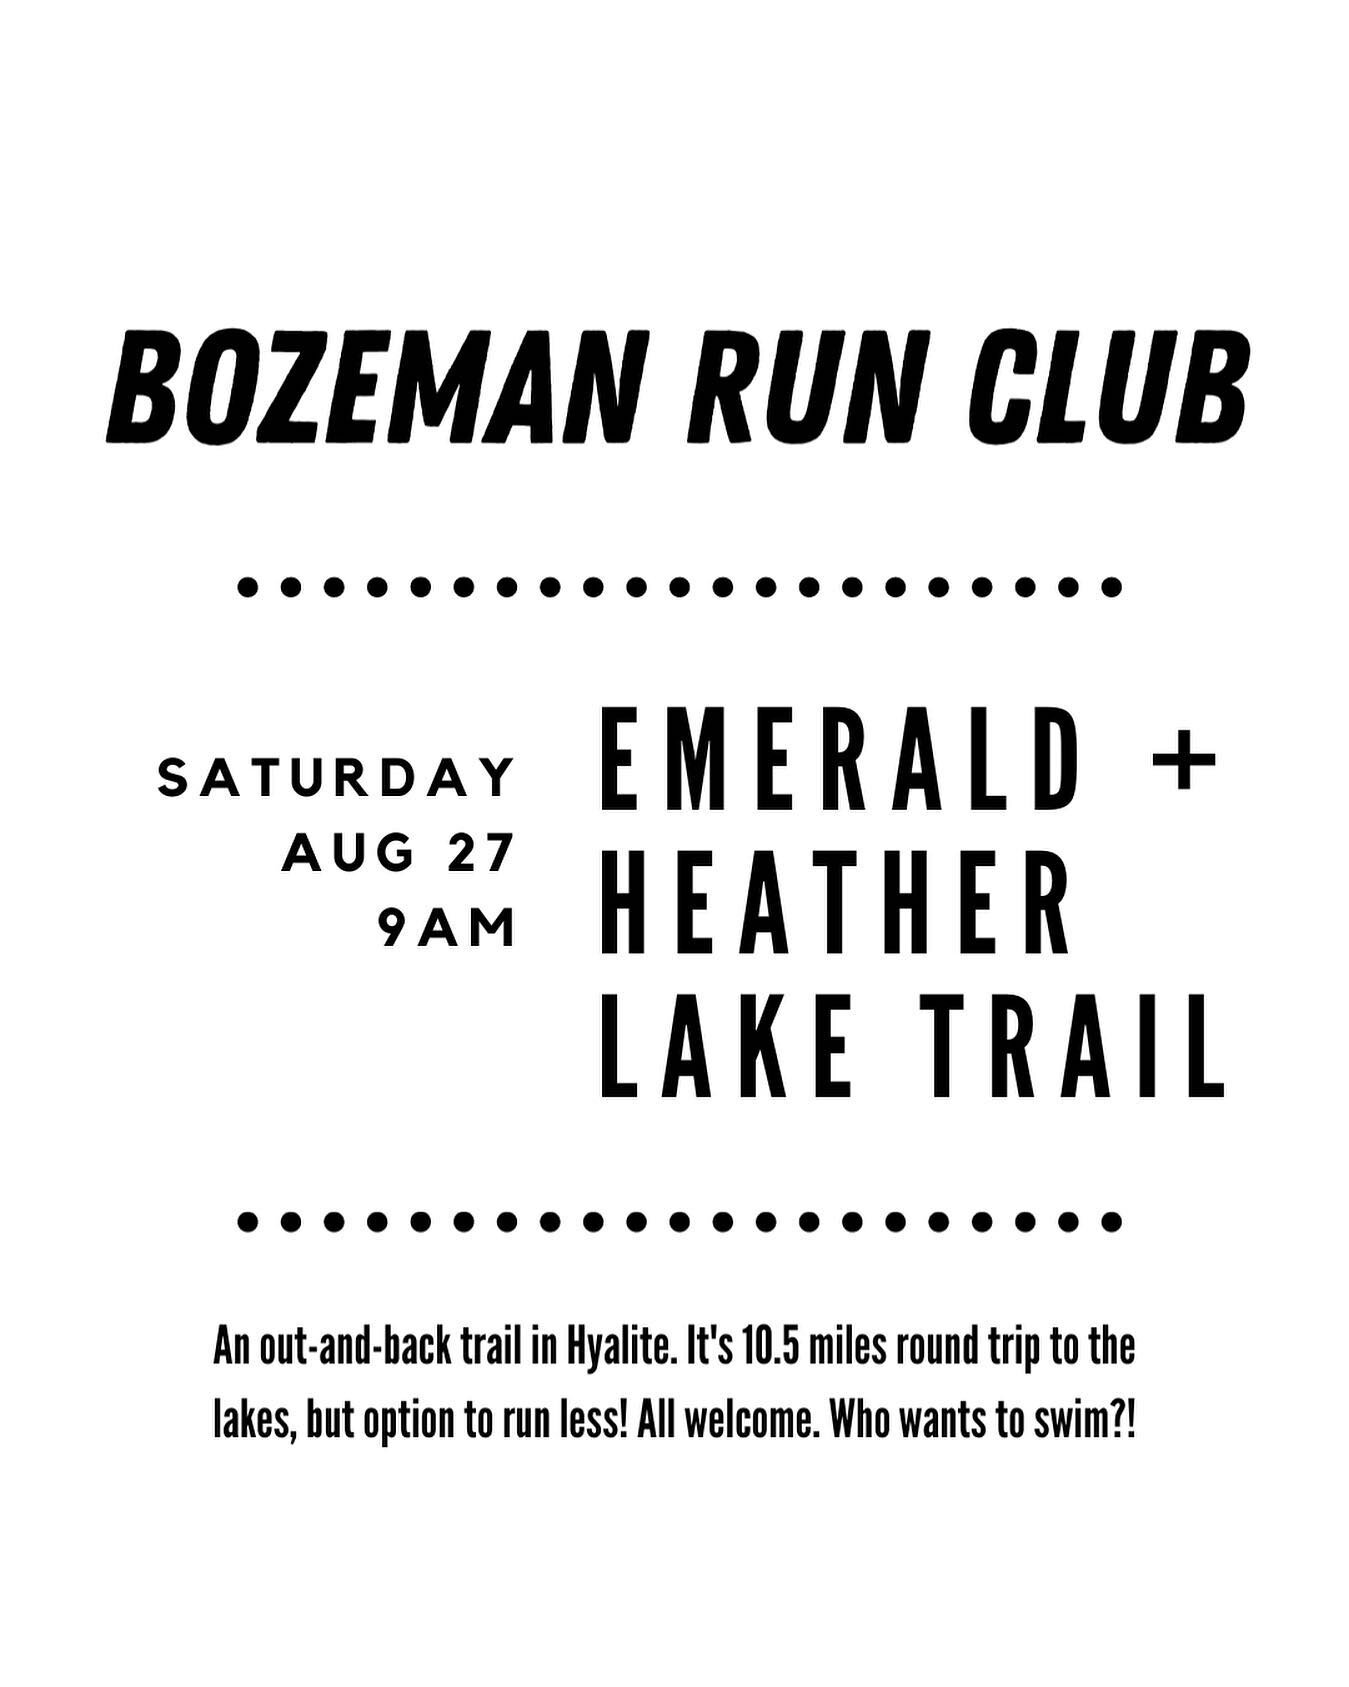 Tomorrow!! Run-swim-run!! 

#bozemanrunclub #bozemanrunning #bozemanmt #runbozeman #runningcommunity #hyaliteprovides